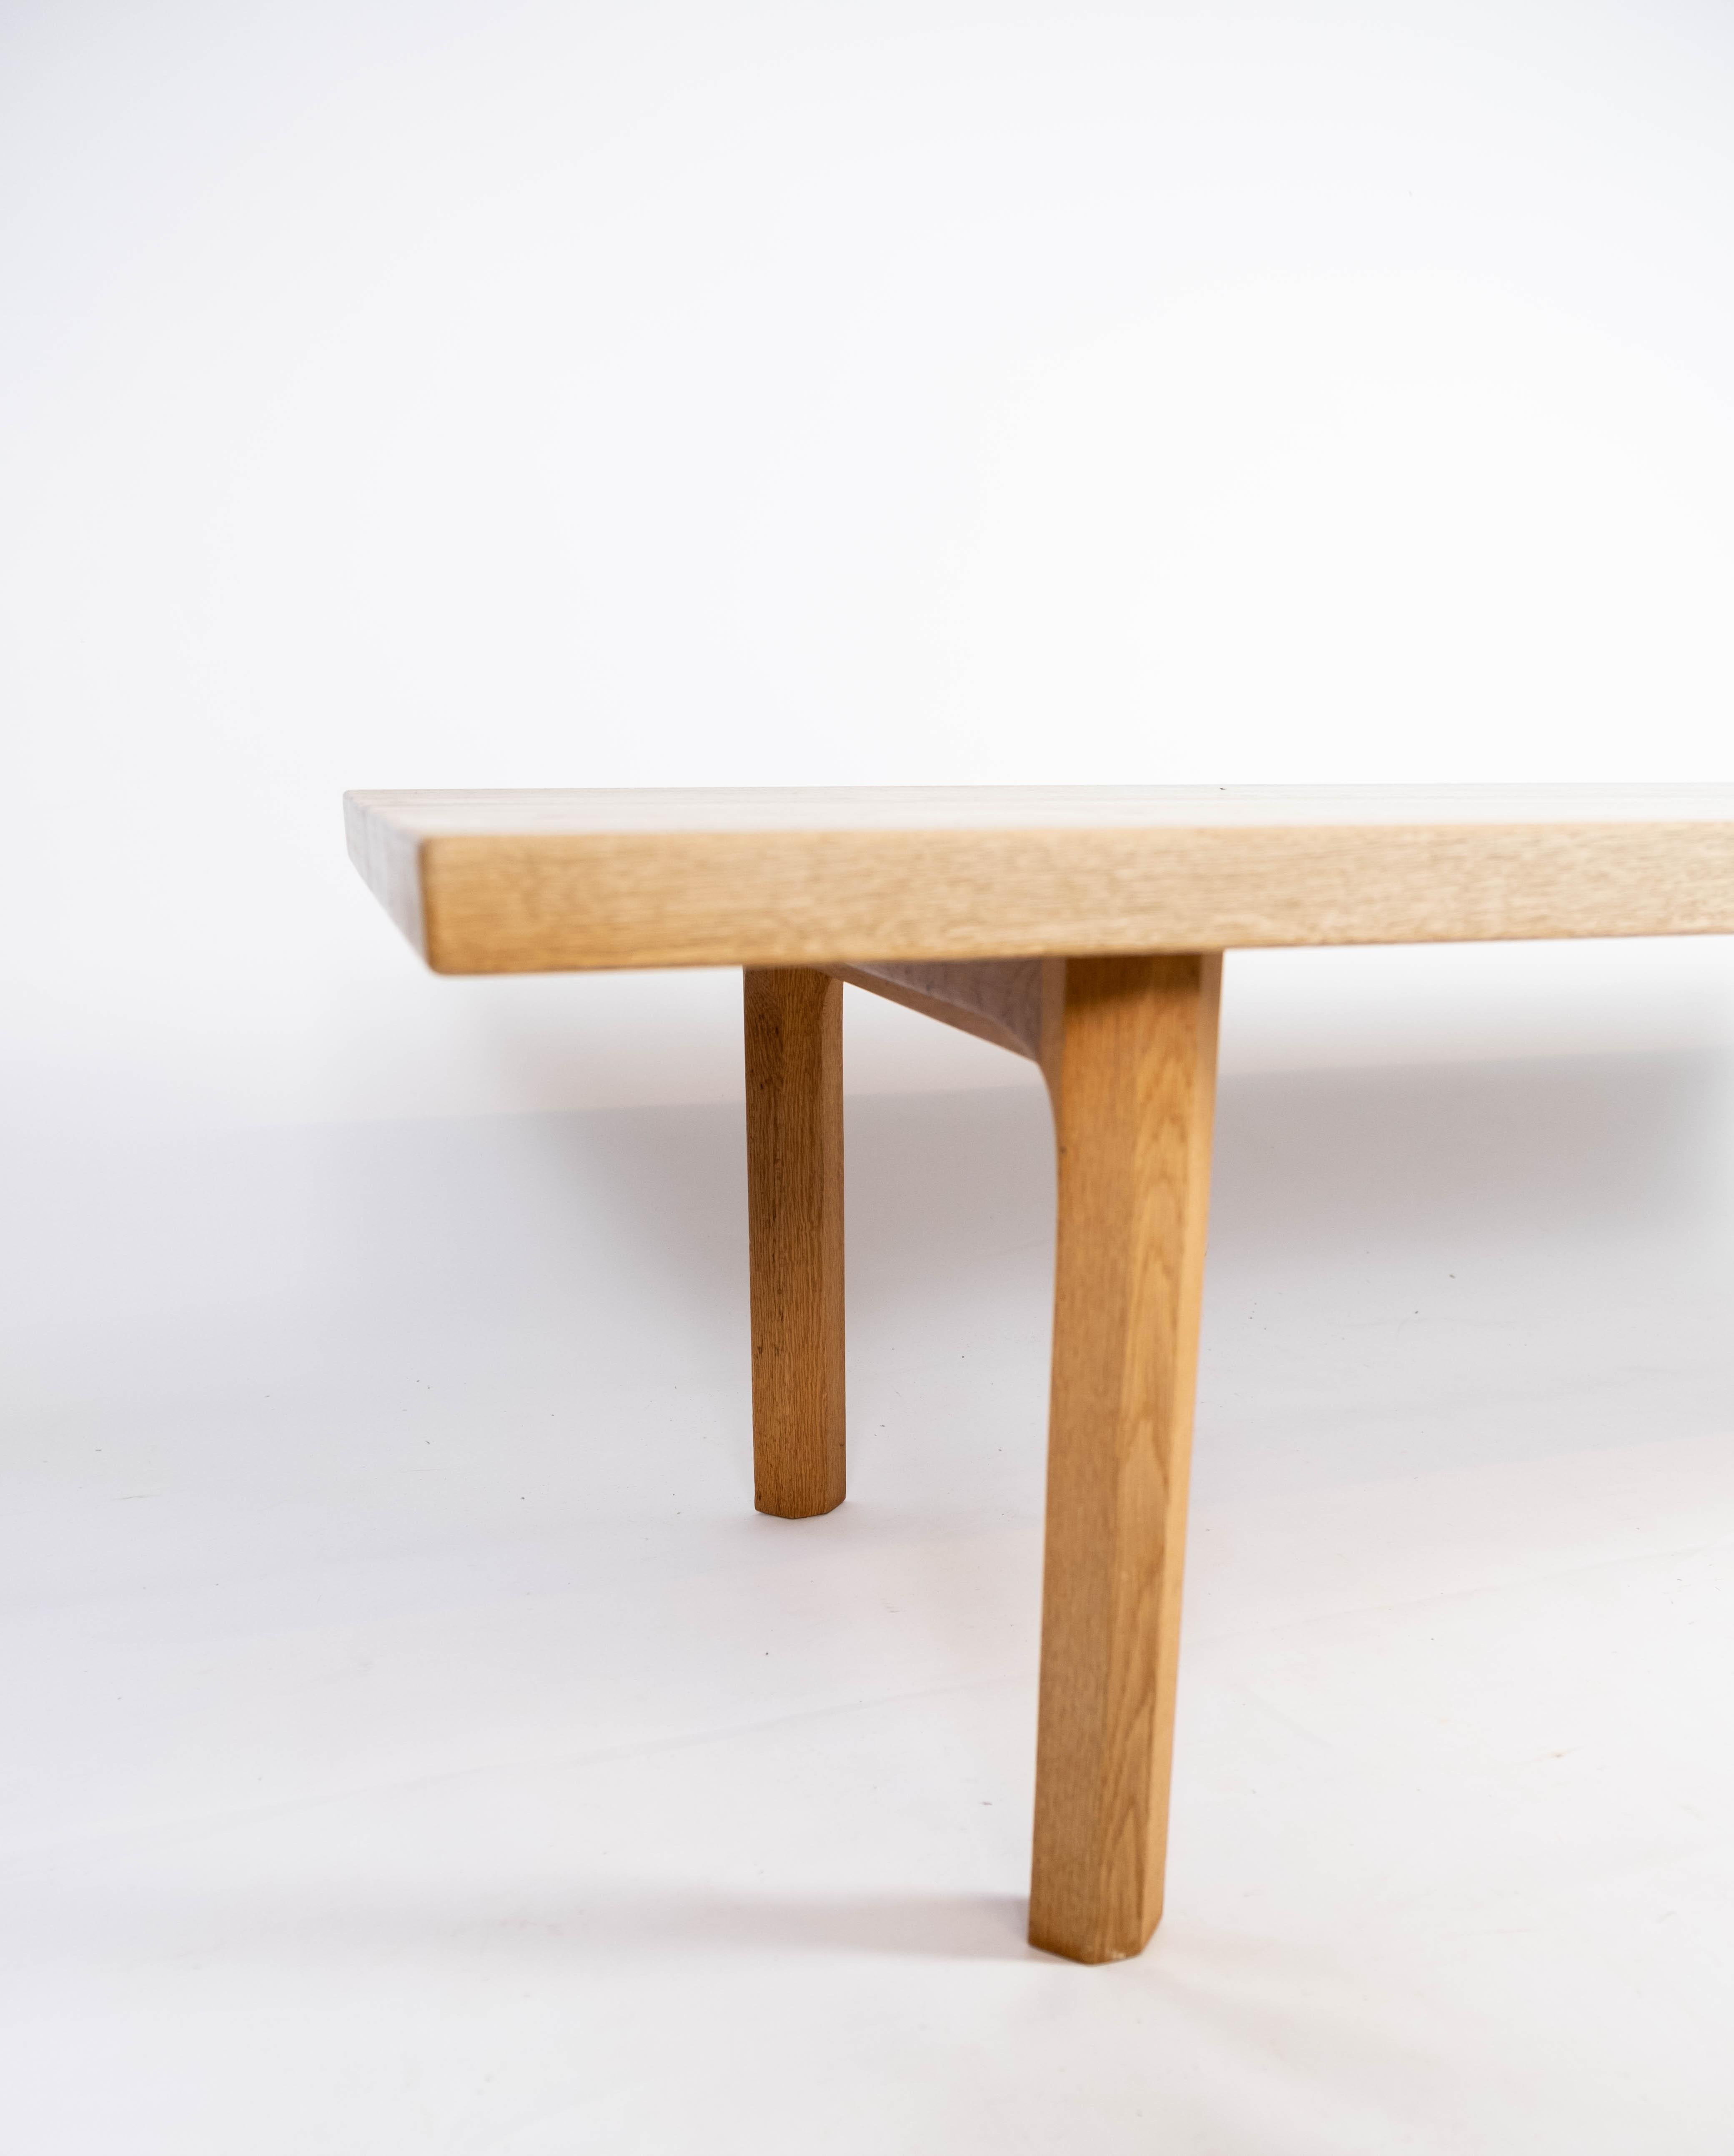 Scandinavian Modern Coffee Table in Oak of Danish Design from the 1960s